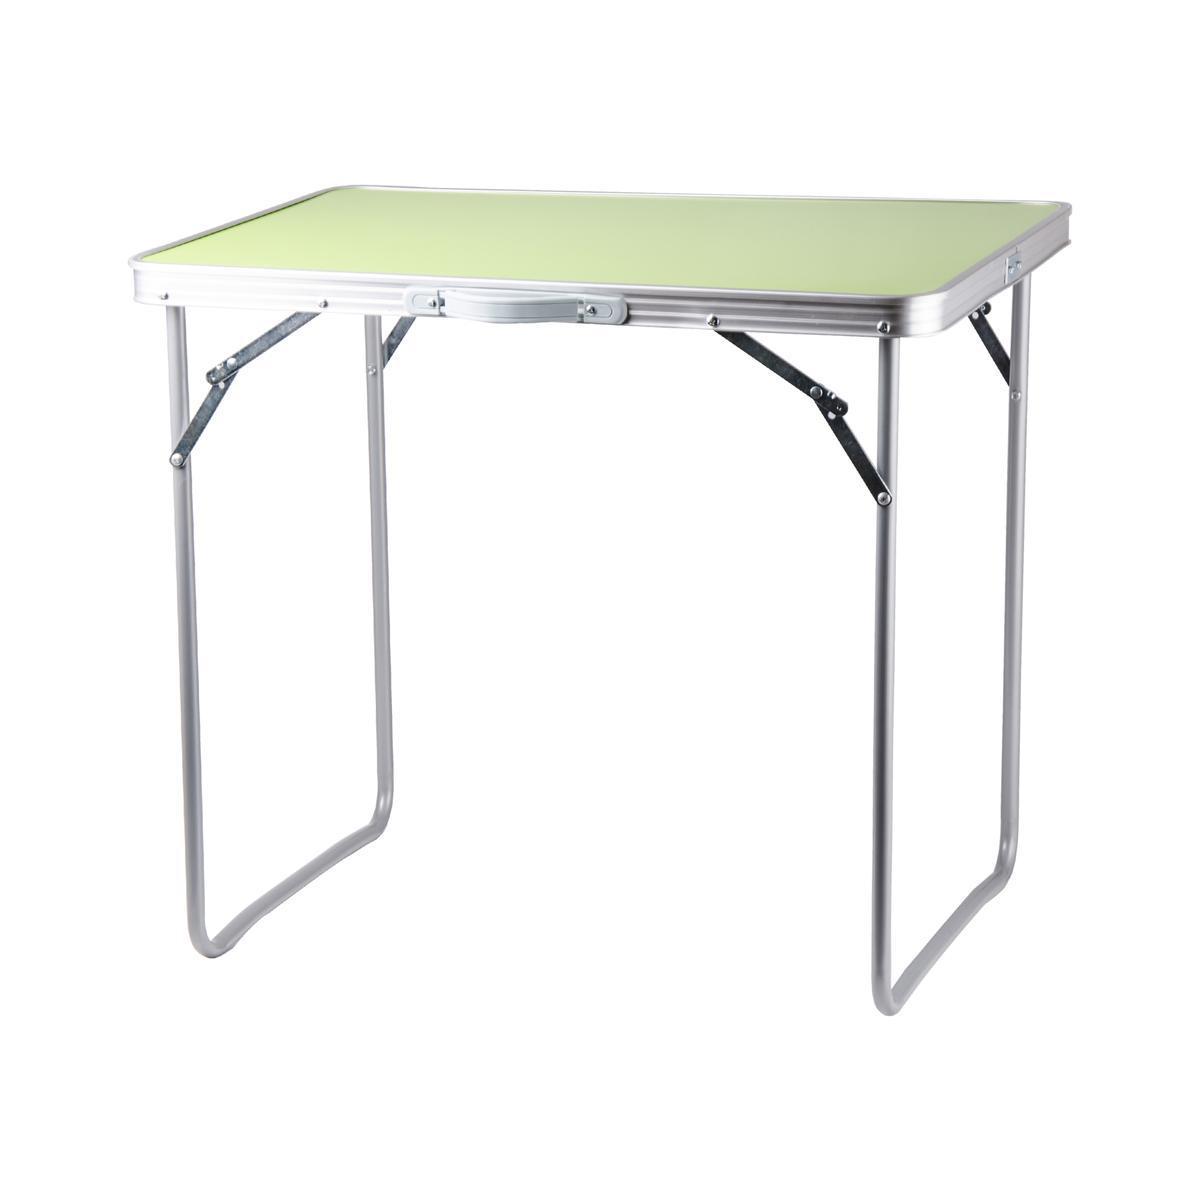 Table pliante de camping - 70 x 50 x H 60 cm - vert anis